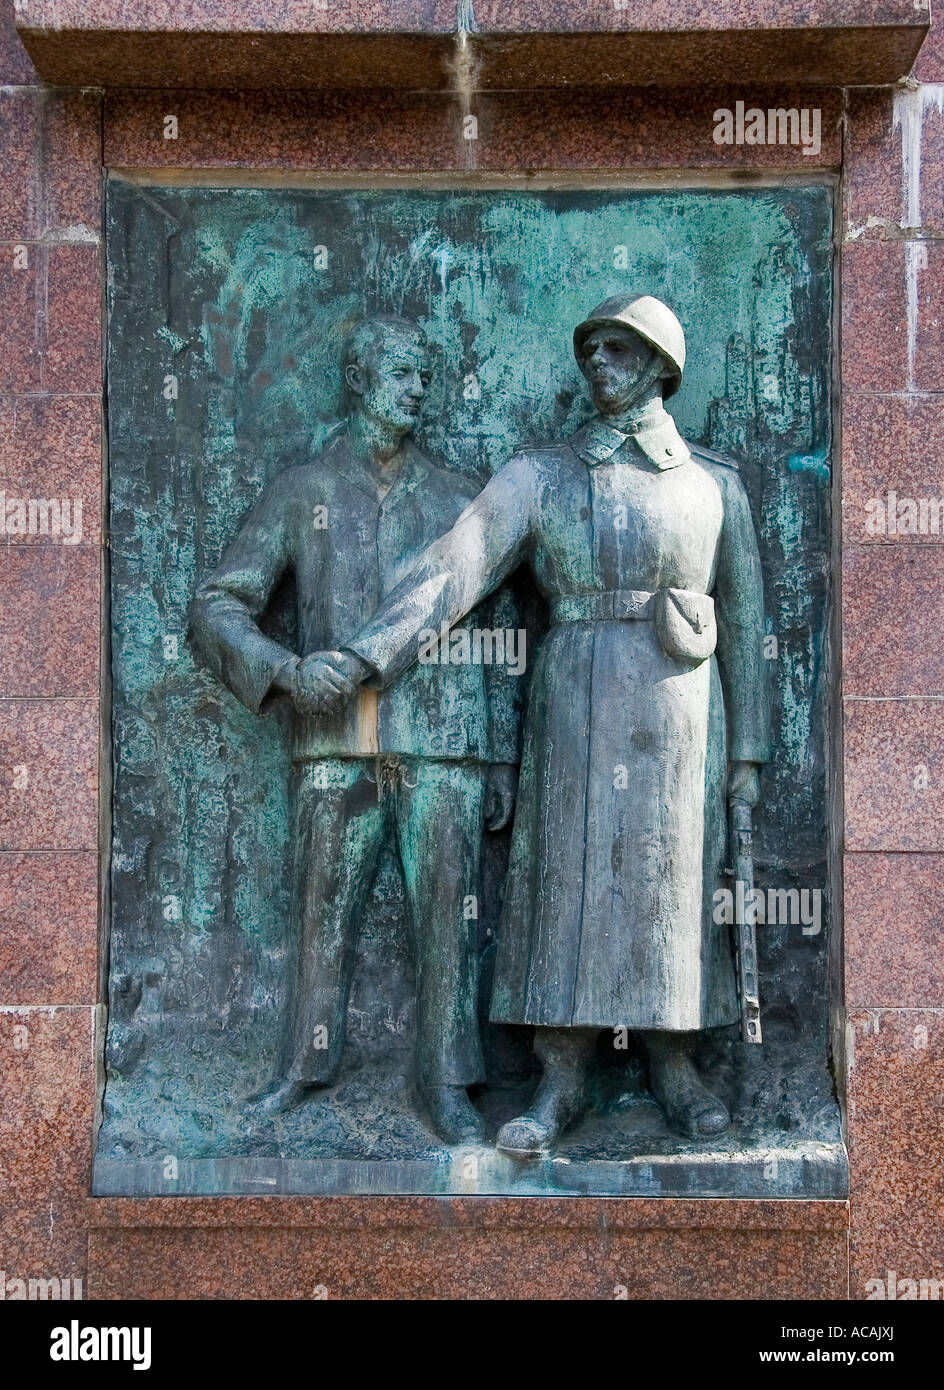 Memoriale per i soldati sovietici uccisi nella Seconda Guerra Mondiale, Stralsund, Meclemburgo-Pomerania Occidentale, Germania Foto Stock